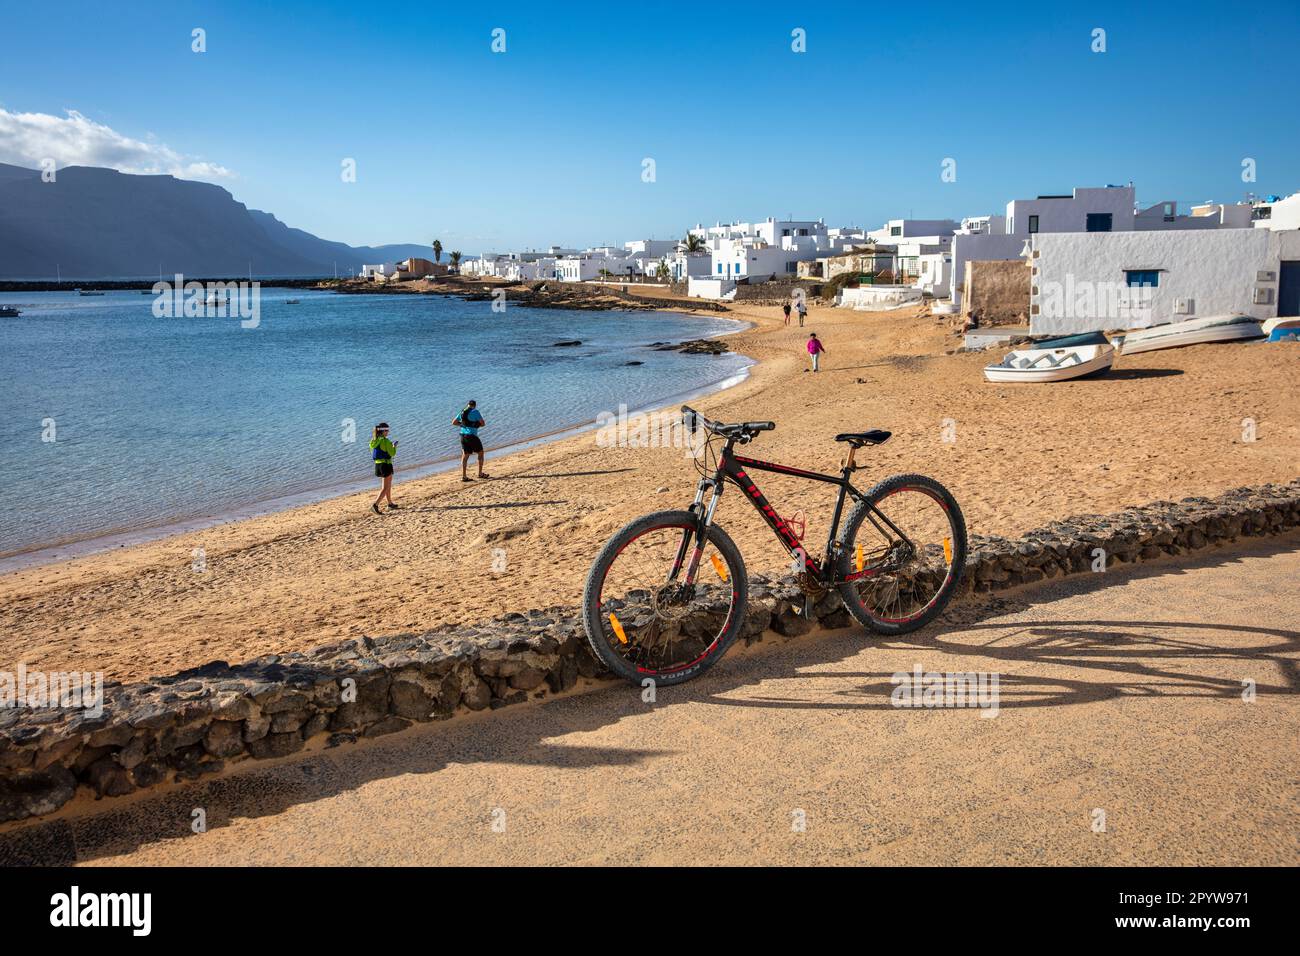 Spain, Canary Islands, Lanzarote island, La Graciosa Island. Caleta de Sebo. Port. Bicycle. Stock Photo